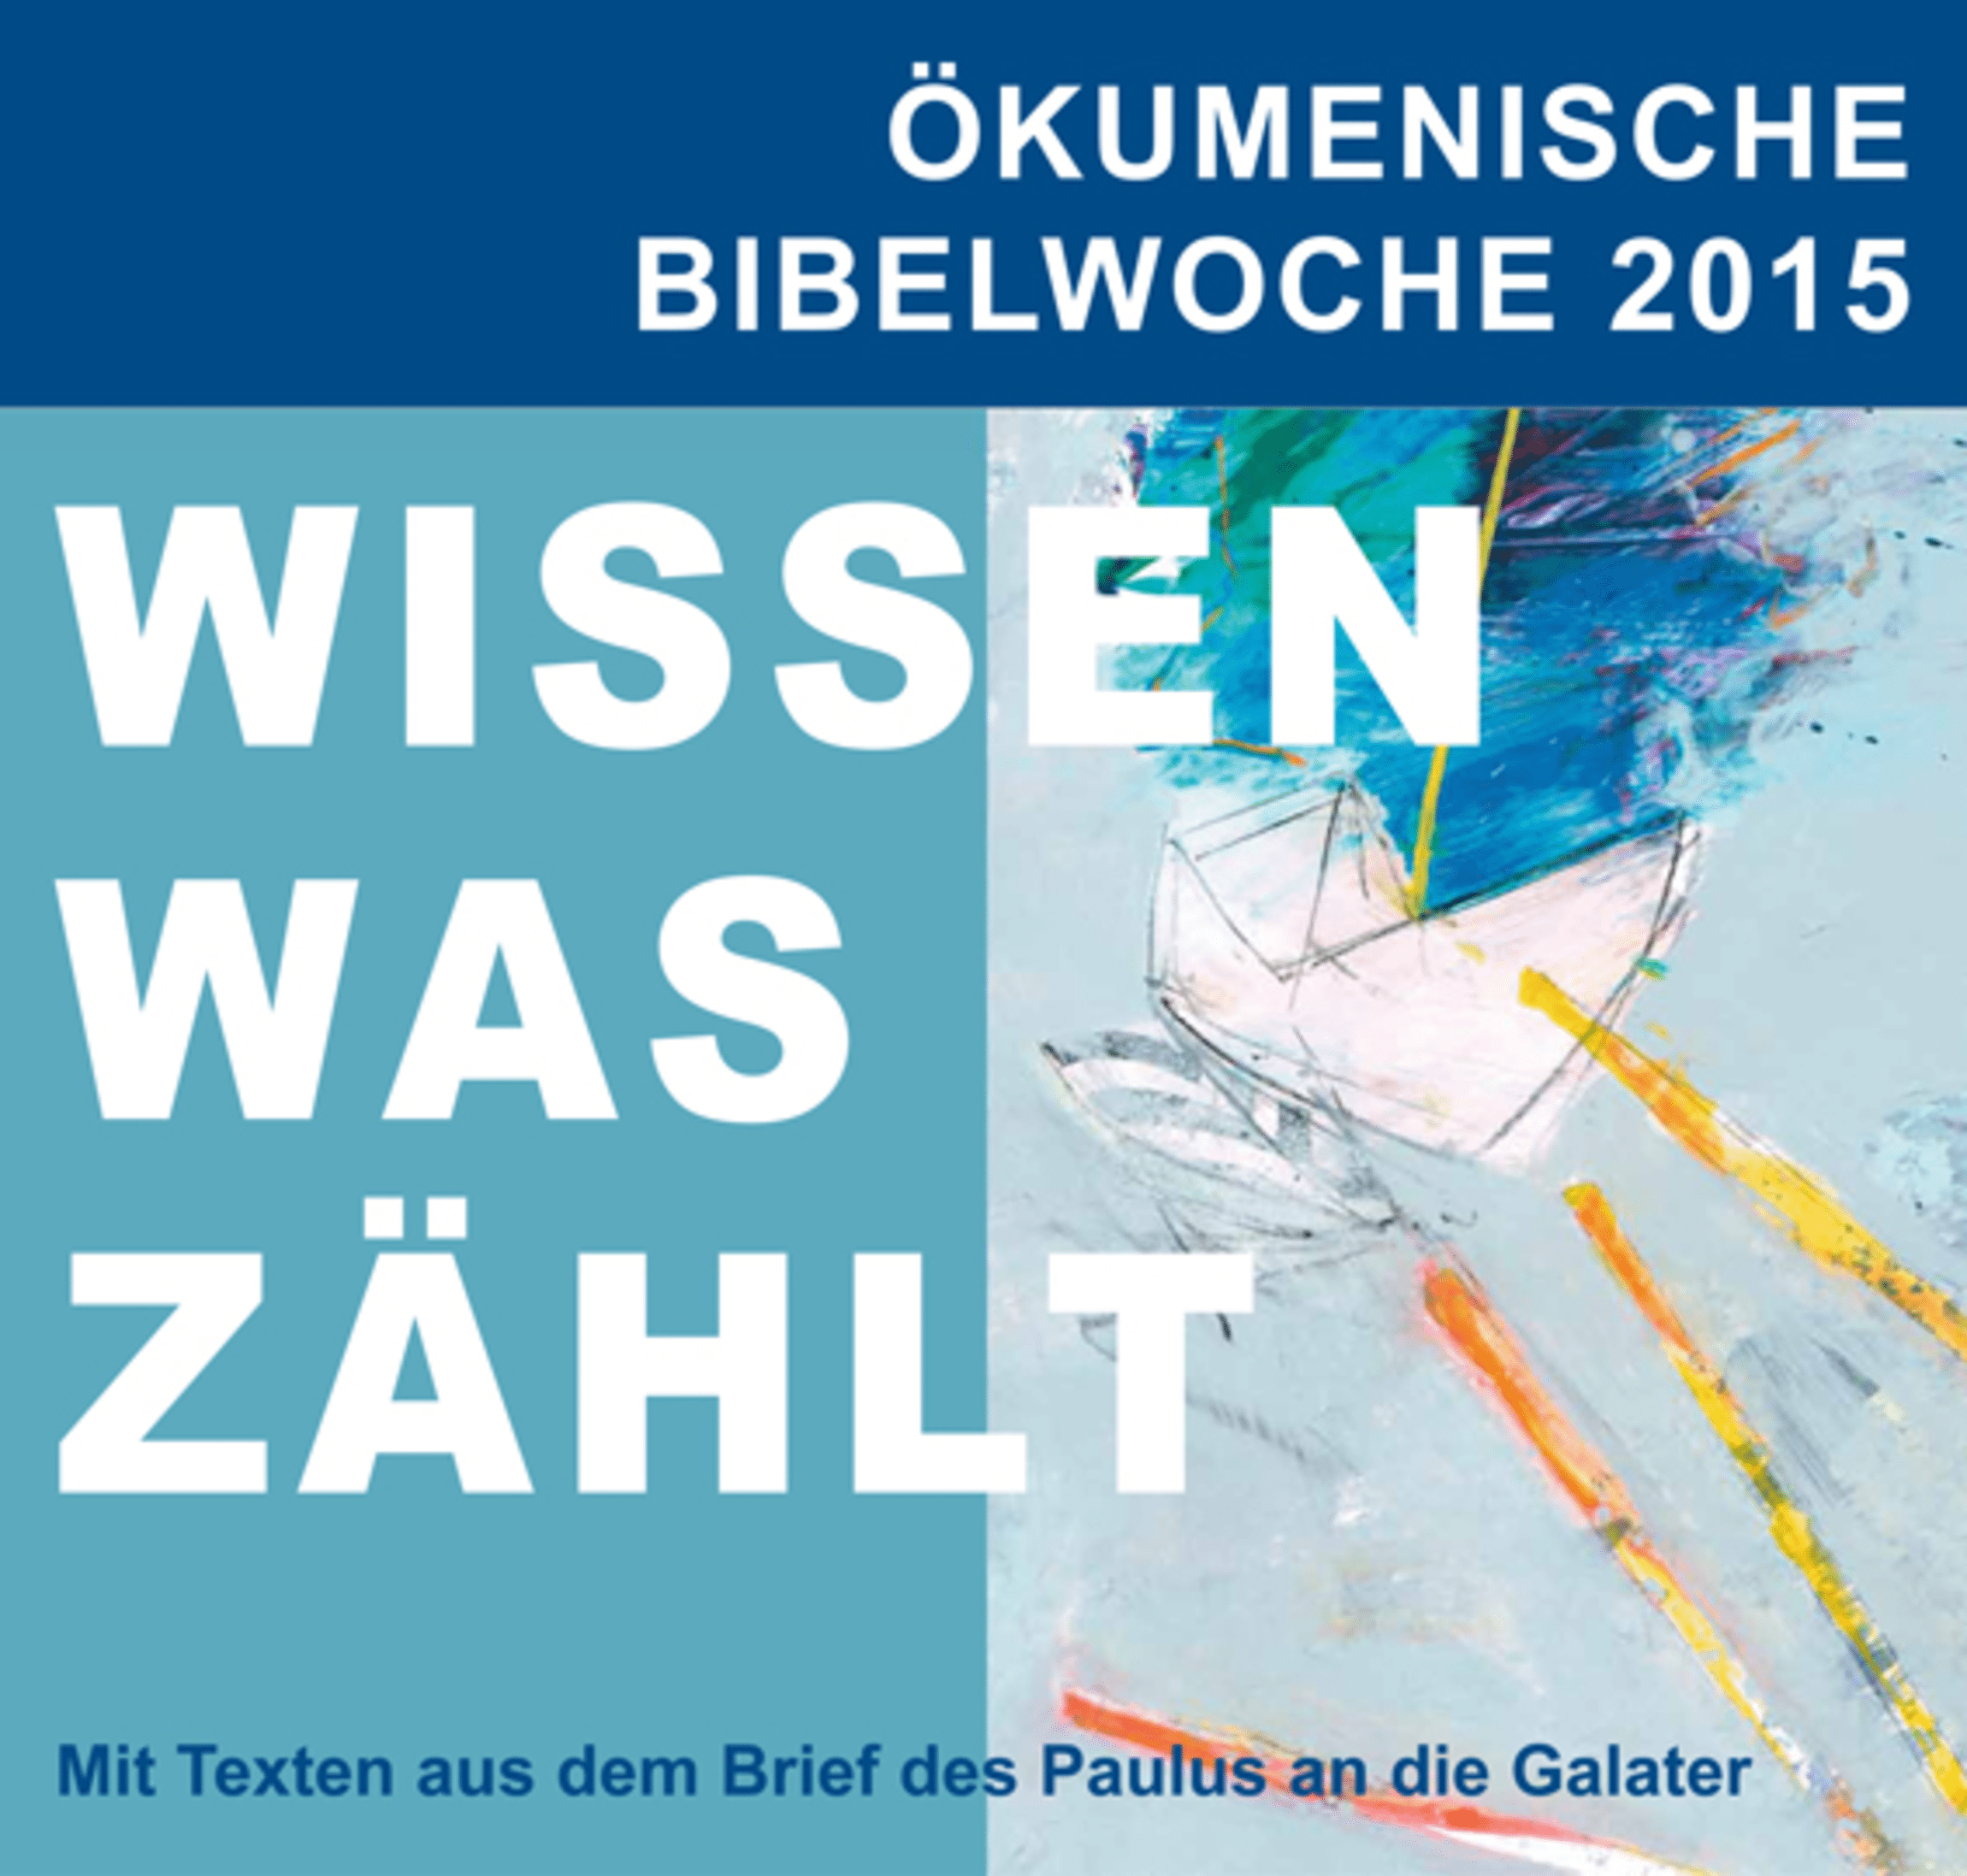 Ökumenische Bibelwoche 2014/15: „Wissen was zählt!“